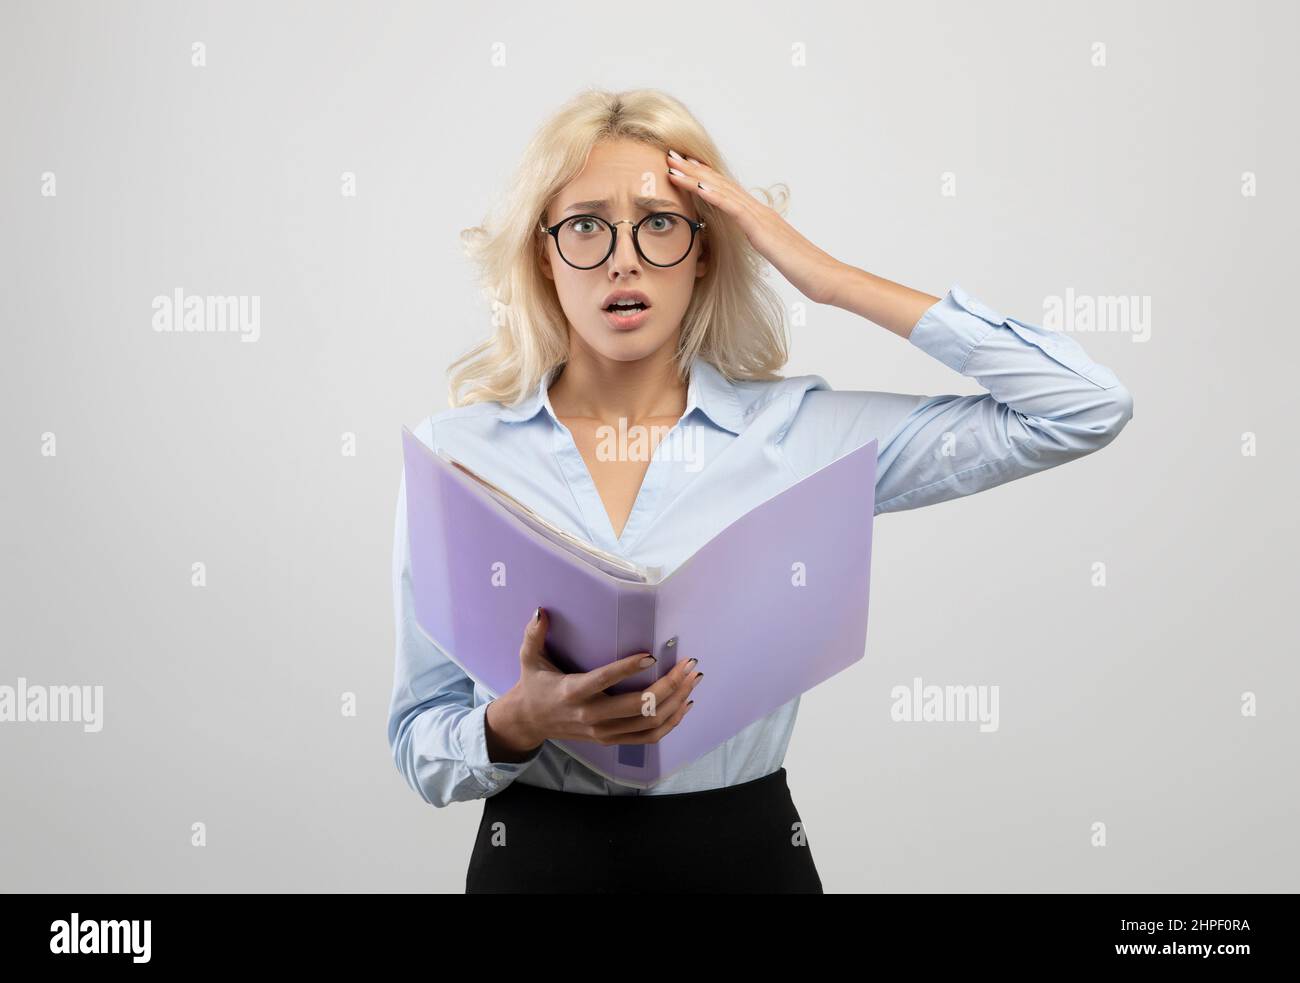 Gestresste junge Büroangestellte mit Dokumenten, schockiert über Fehler, fehlende Frist, posiert auf hellgrauem Hintergrund Stockfoto